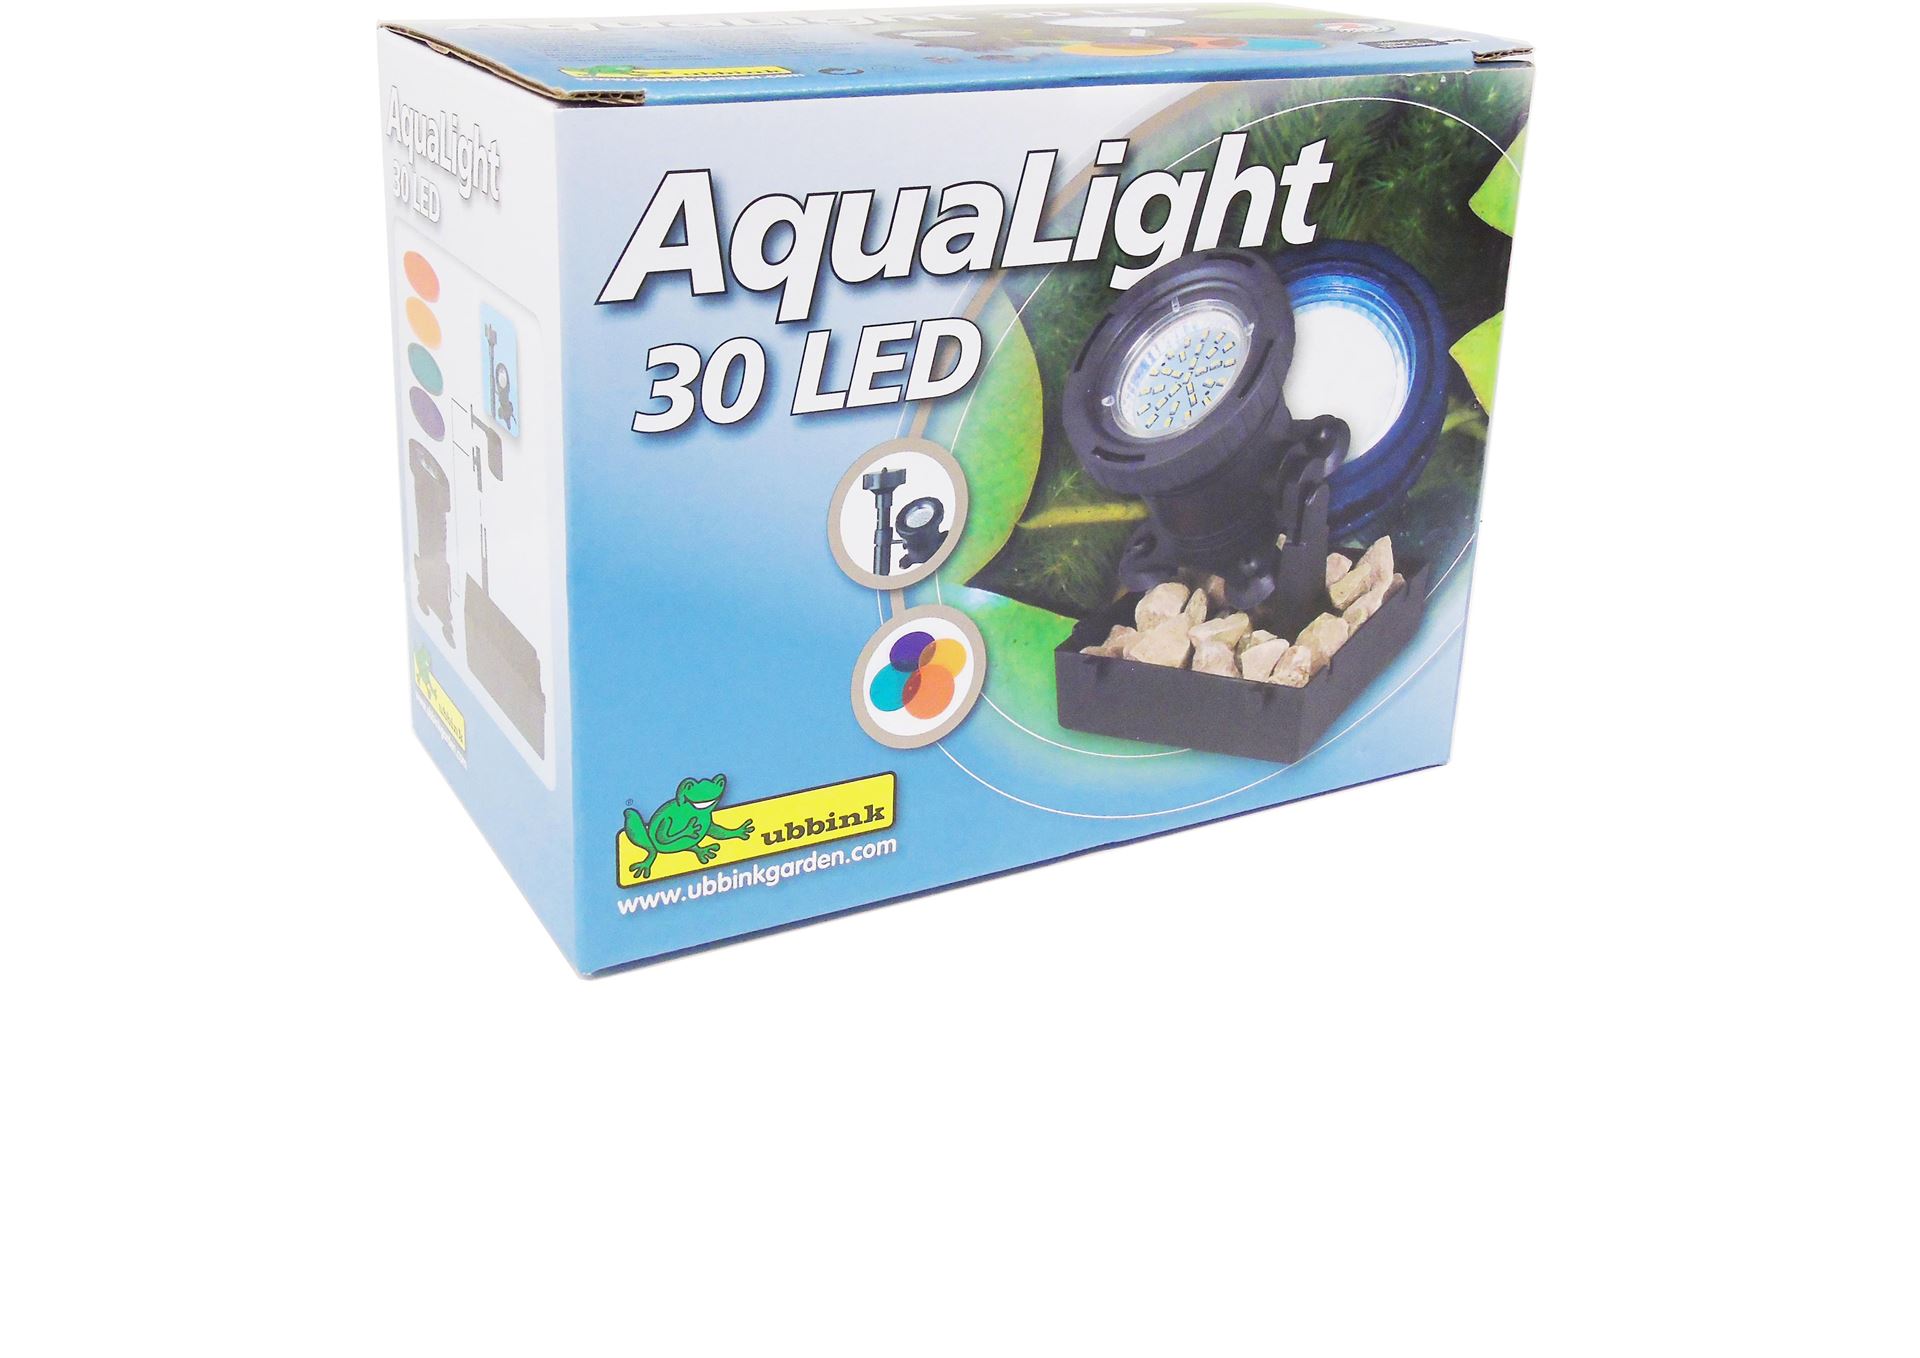 AquaLight-30-LED-4-kleurschijven-MR16-30-SMD-warm-wit-trafo-DE-06-12W-Lumen-220-EEK-A-2-5-Watt